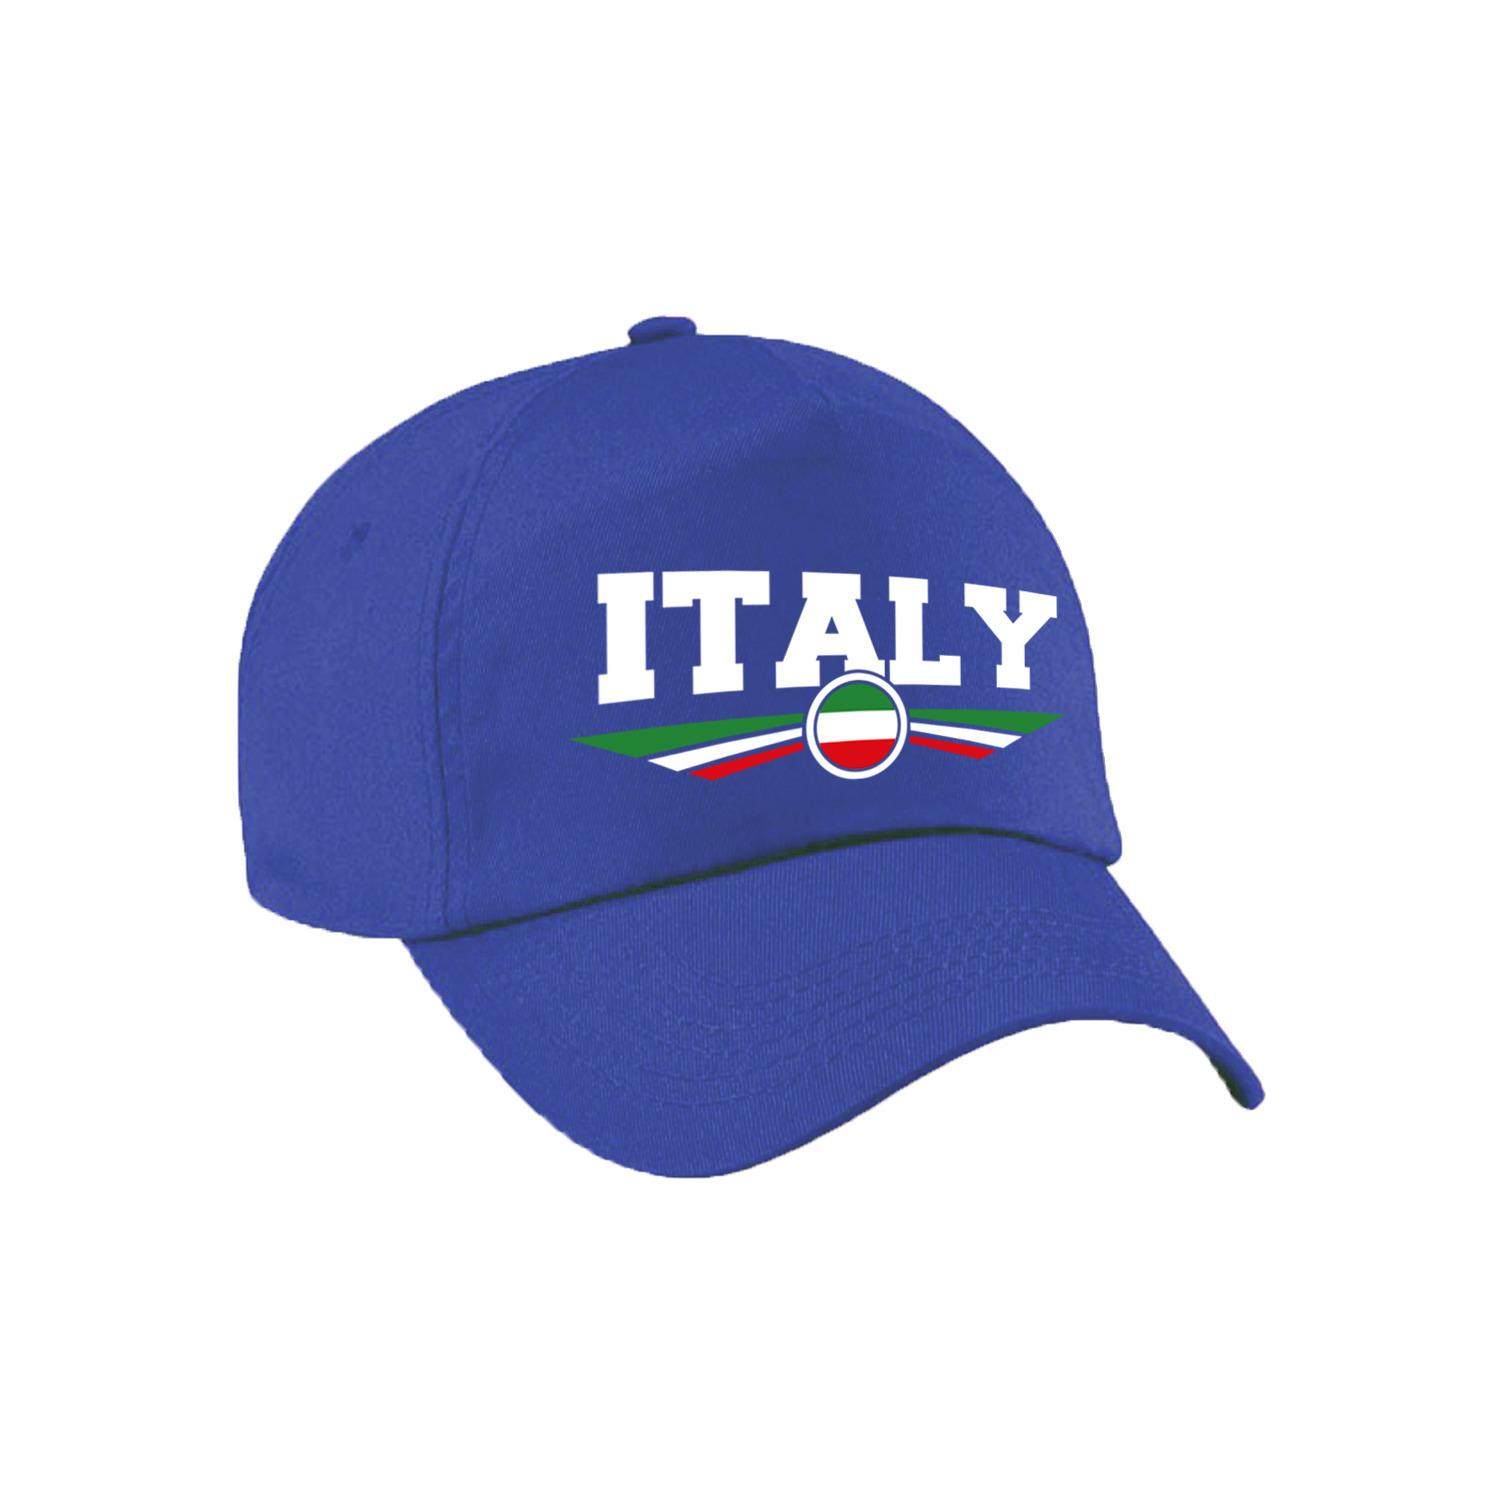 Italie-Italy landen pet-baseball cap blauw volwassenen